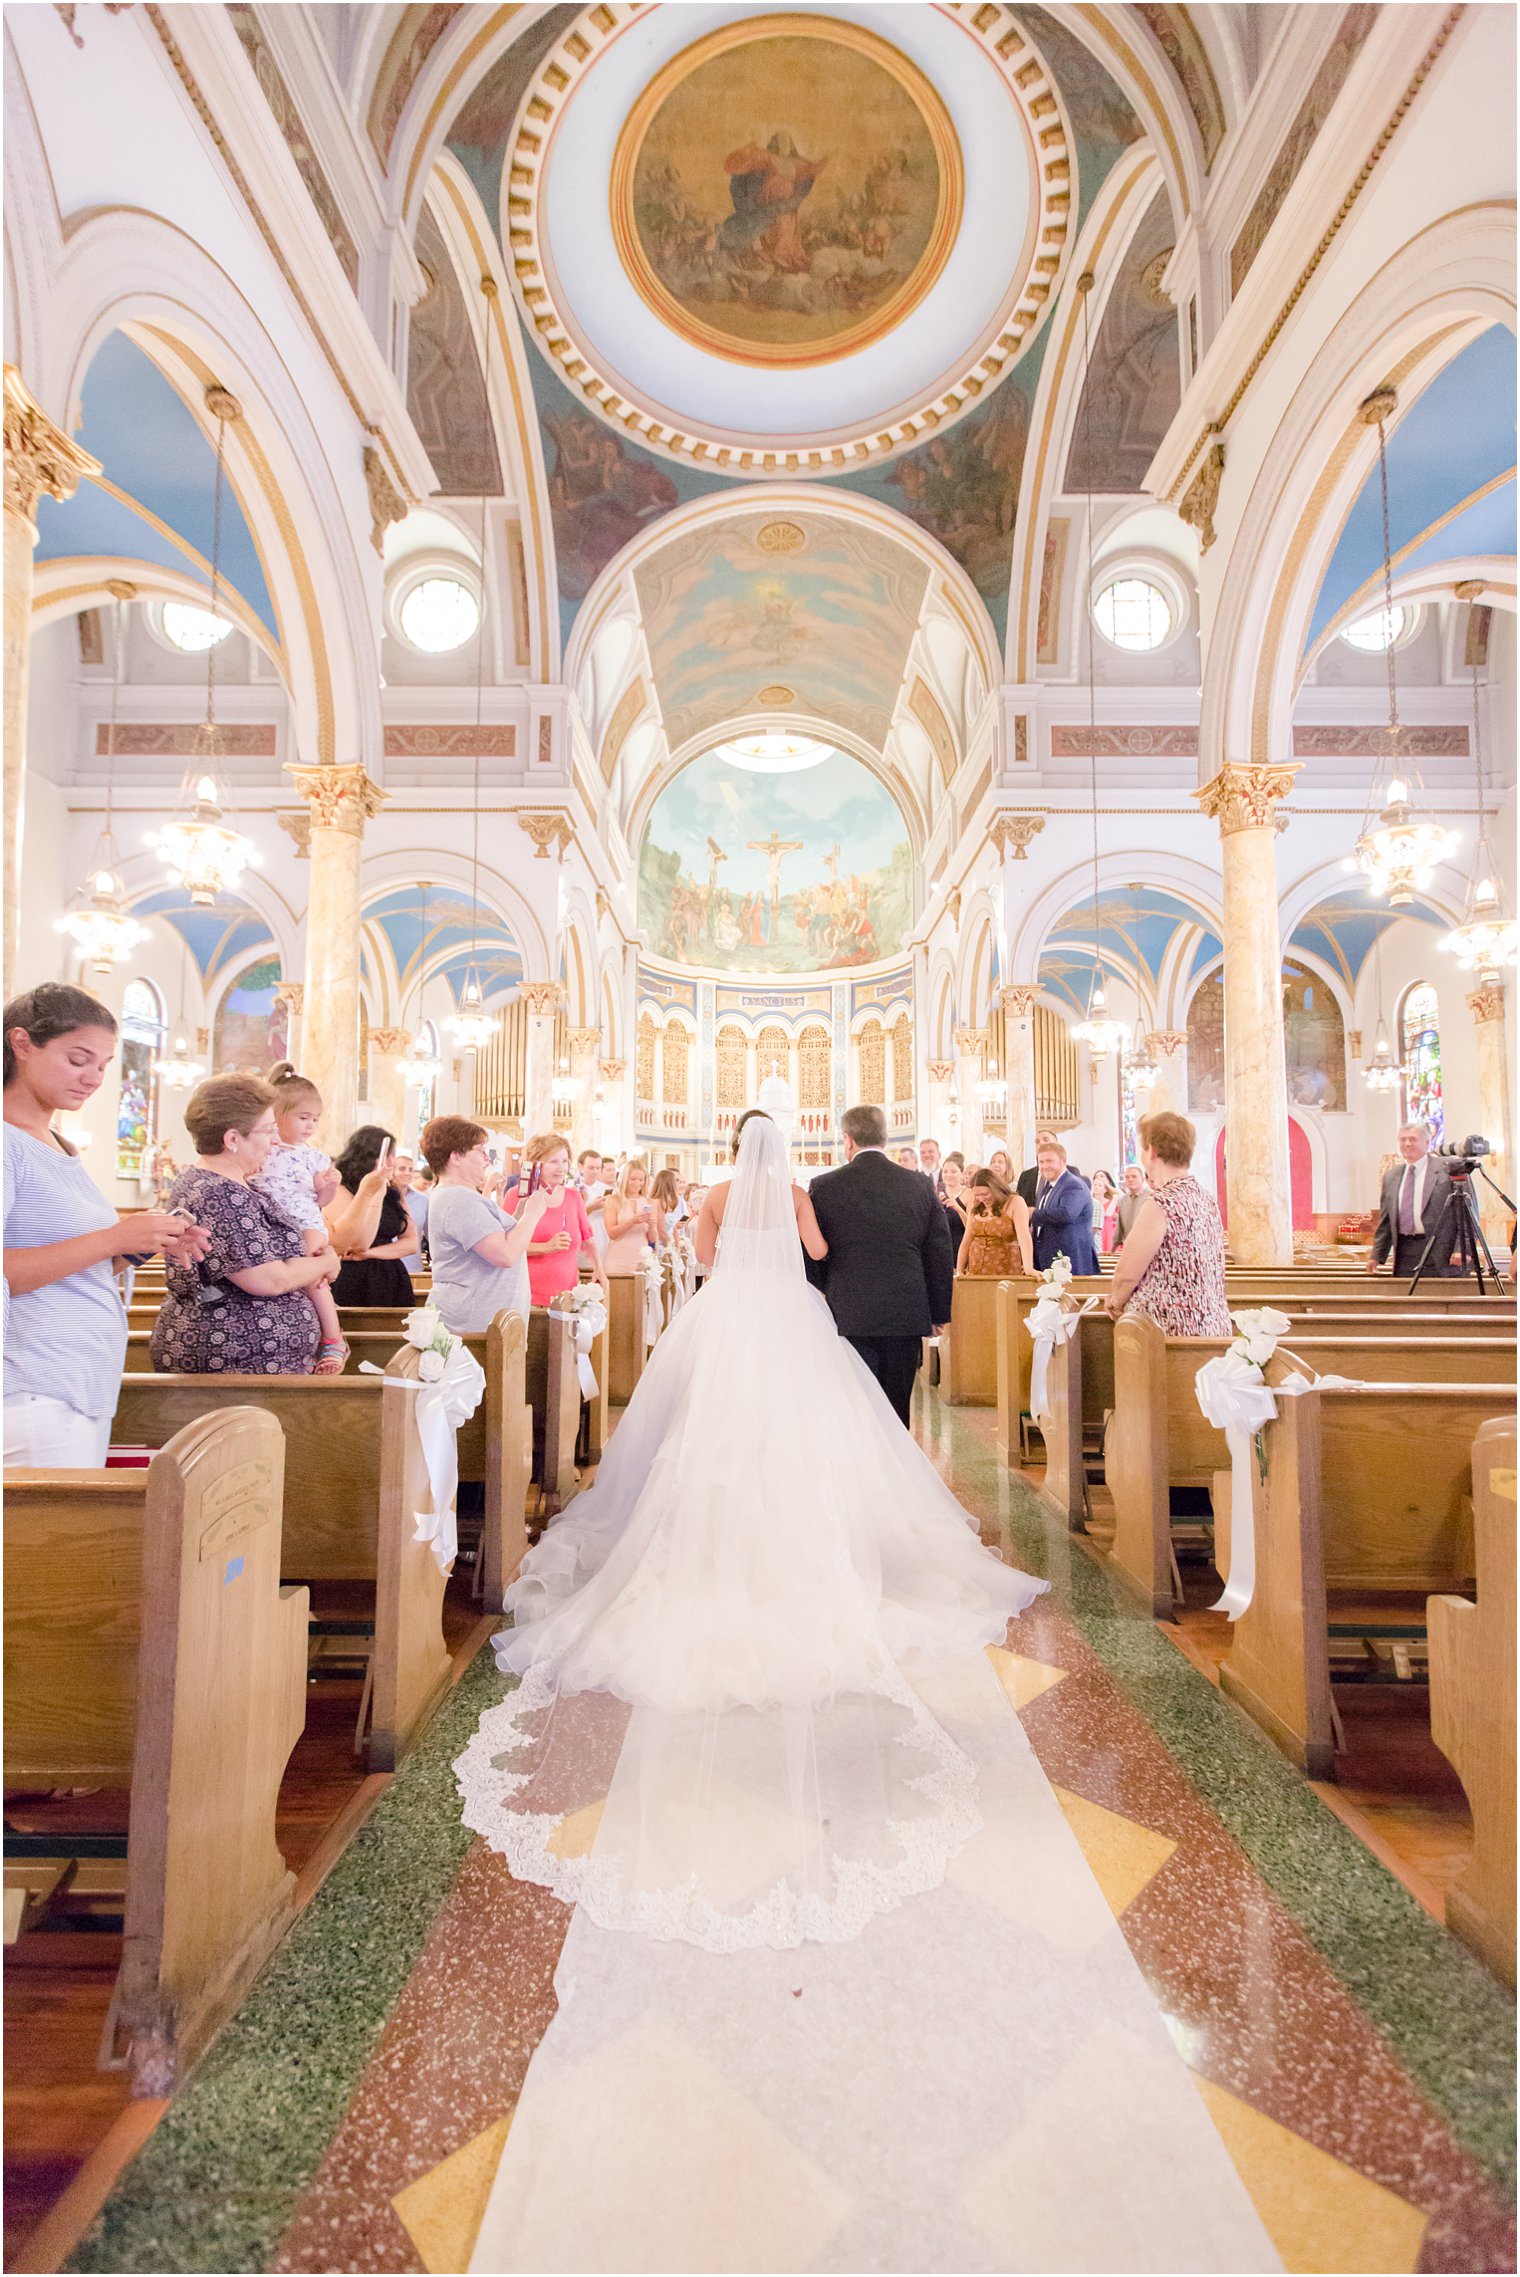 Wedding processional at St. Finbar Catholic Church - Brooklyn